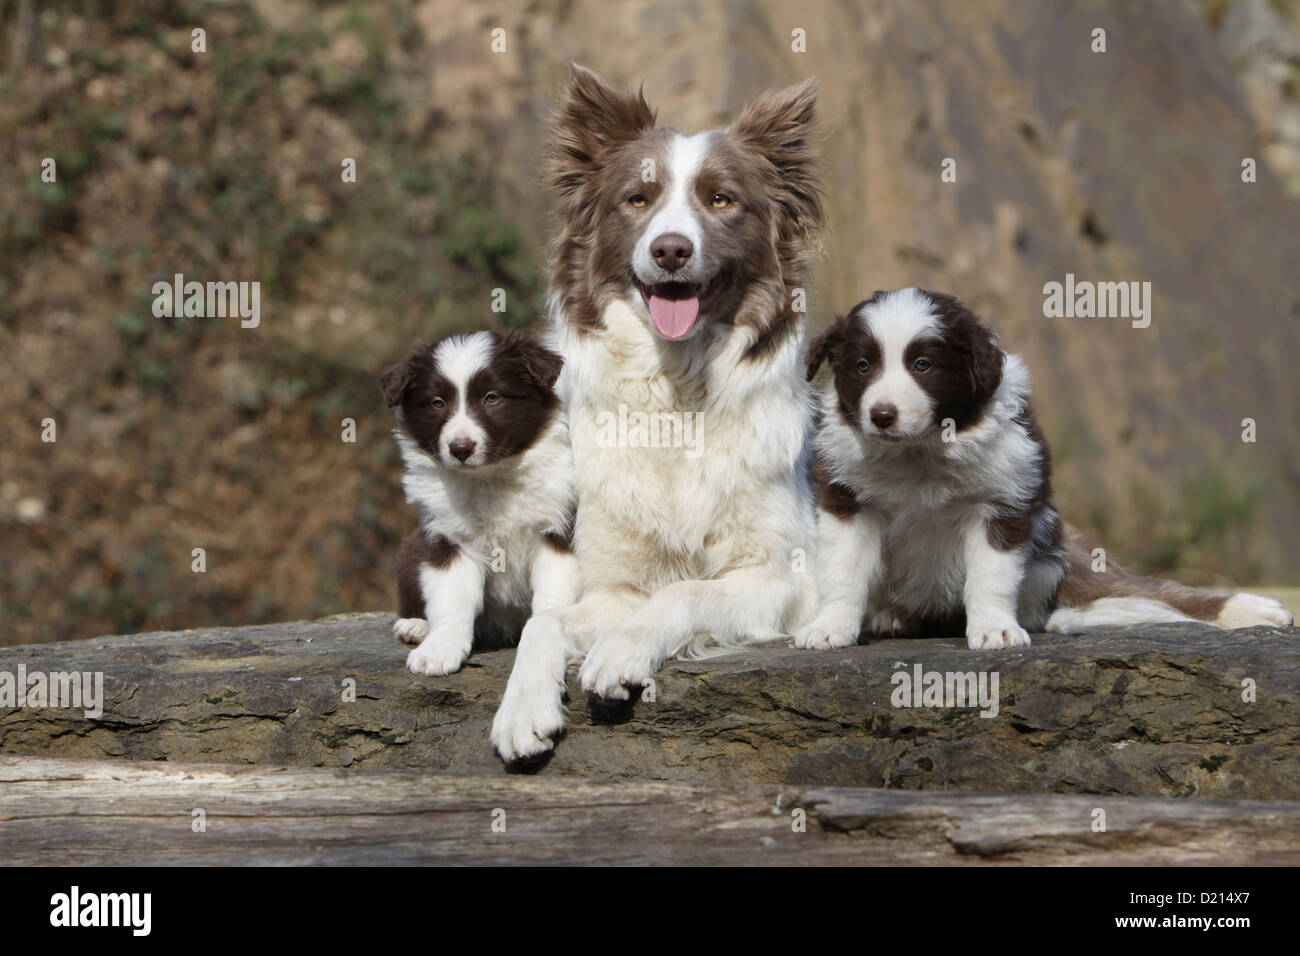 Hund Border Collie Erwachsenen Flieder und zwei Welpen, rot und weiß auf  einem Felsen Stockfotografie - Alamy